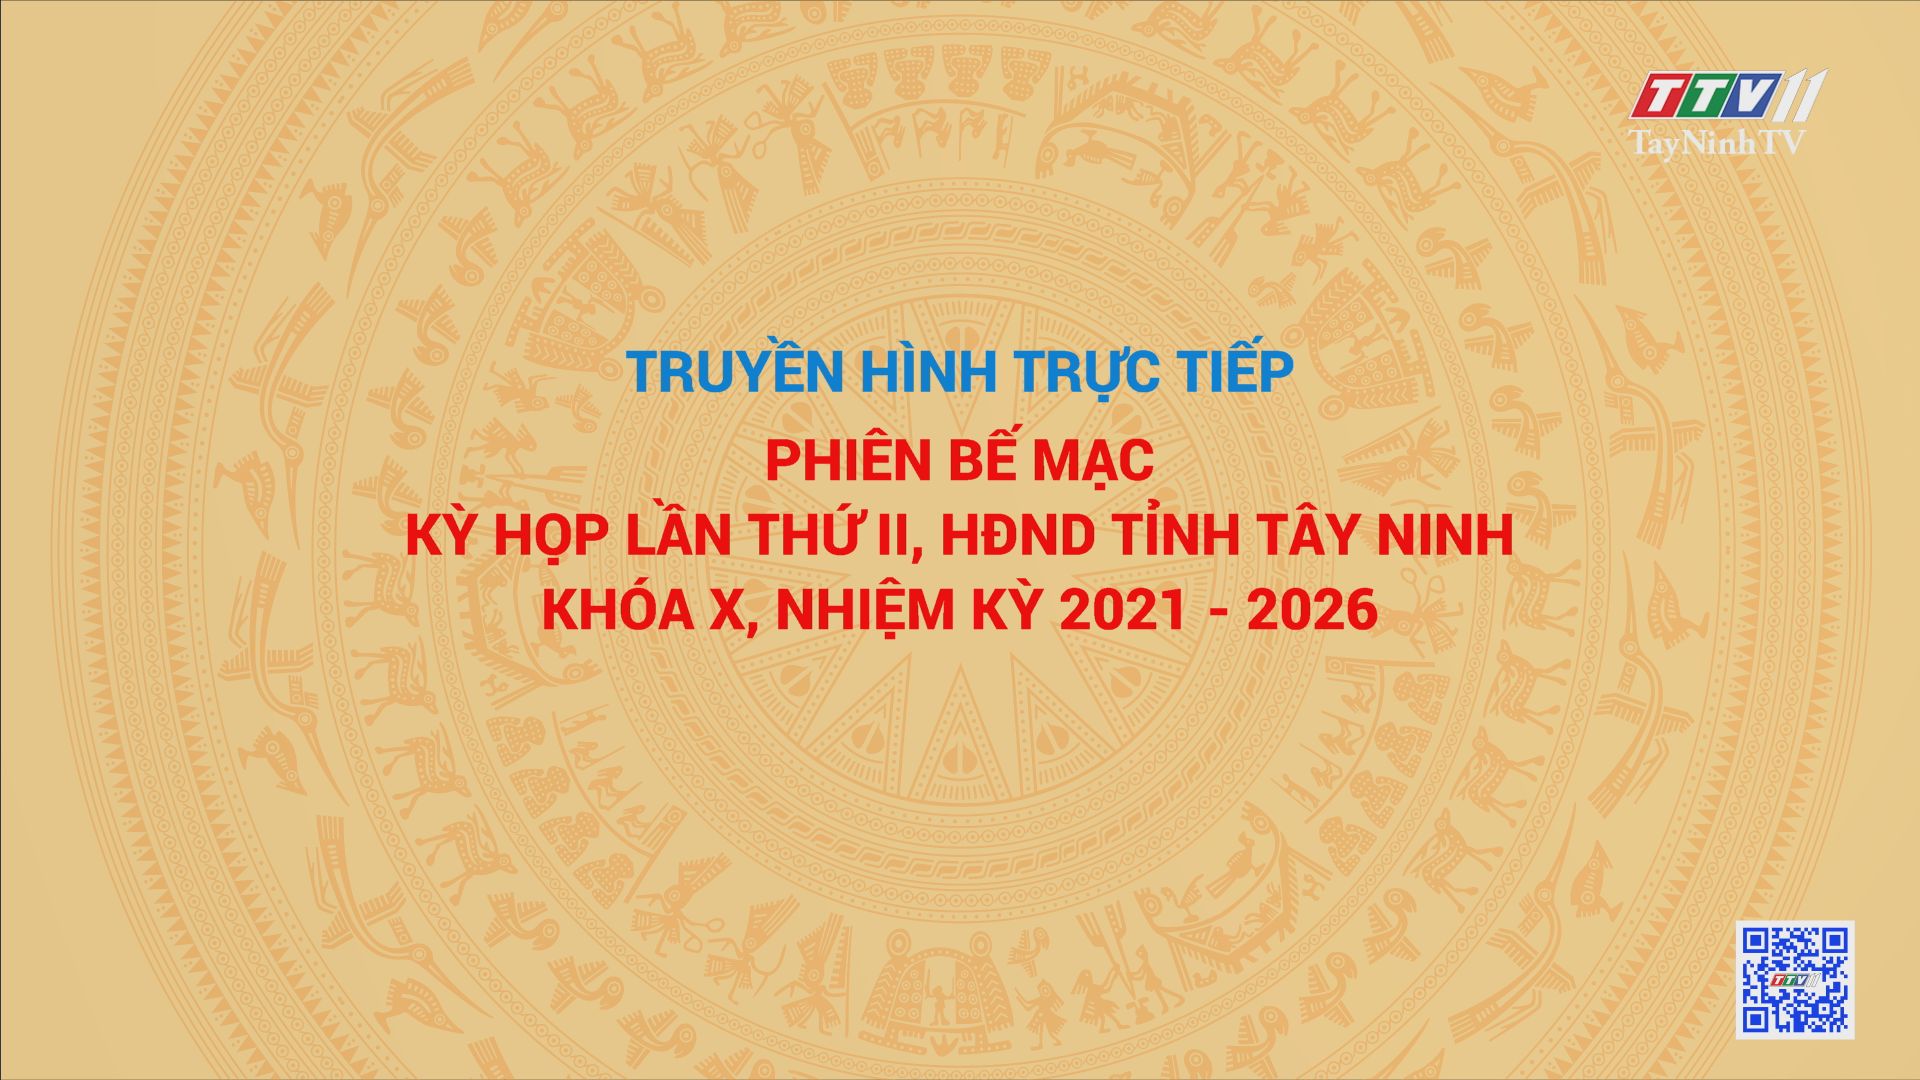 TRỰC TIẾP-PHIÊN BẾ MẠC KỲ HỌP LẦN THỨ II, HĐND TỈNH TÂY NINH KHÓA X, NHIỆM KỲ 2021-2026 (phần hai) | TayNinhTV